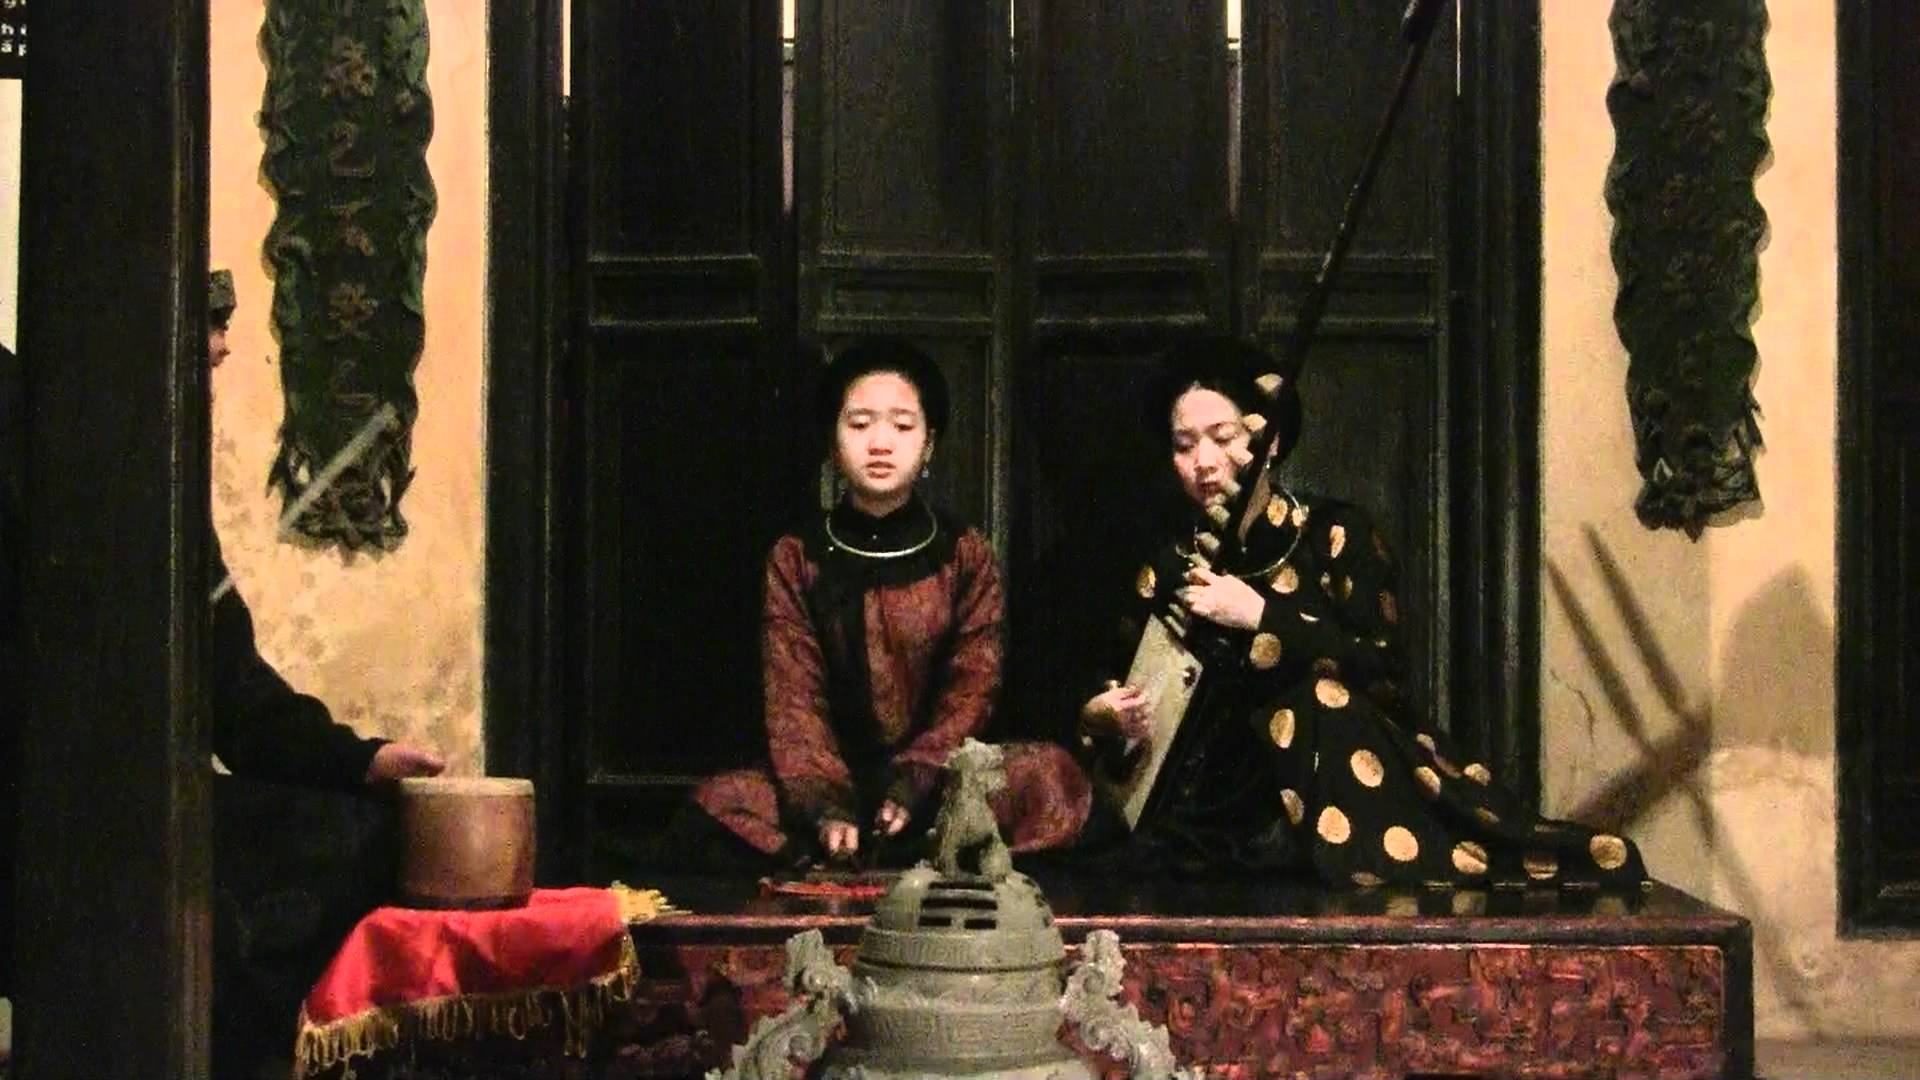 Ca trù: Bộ môn nghệ thuật bác học của nền âm nhạc cổ truyền Việt Nam -  